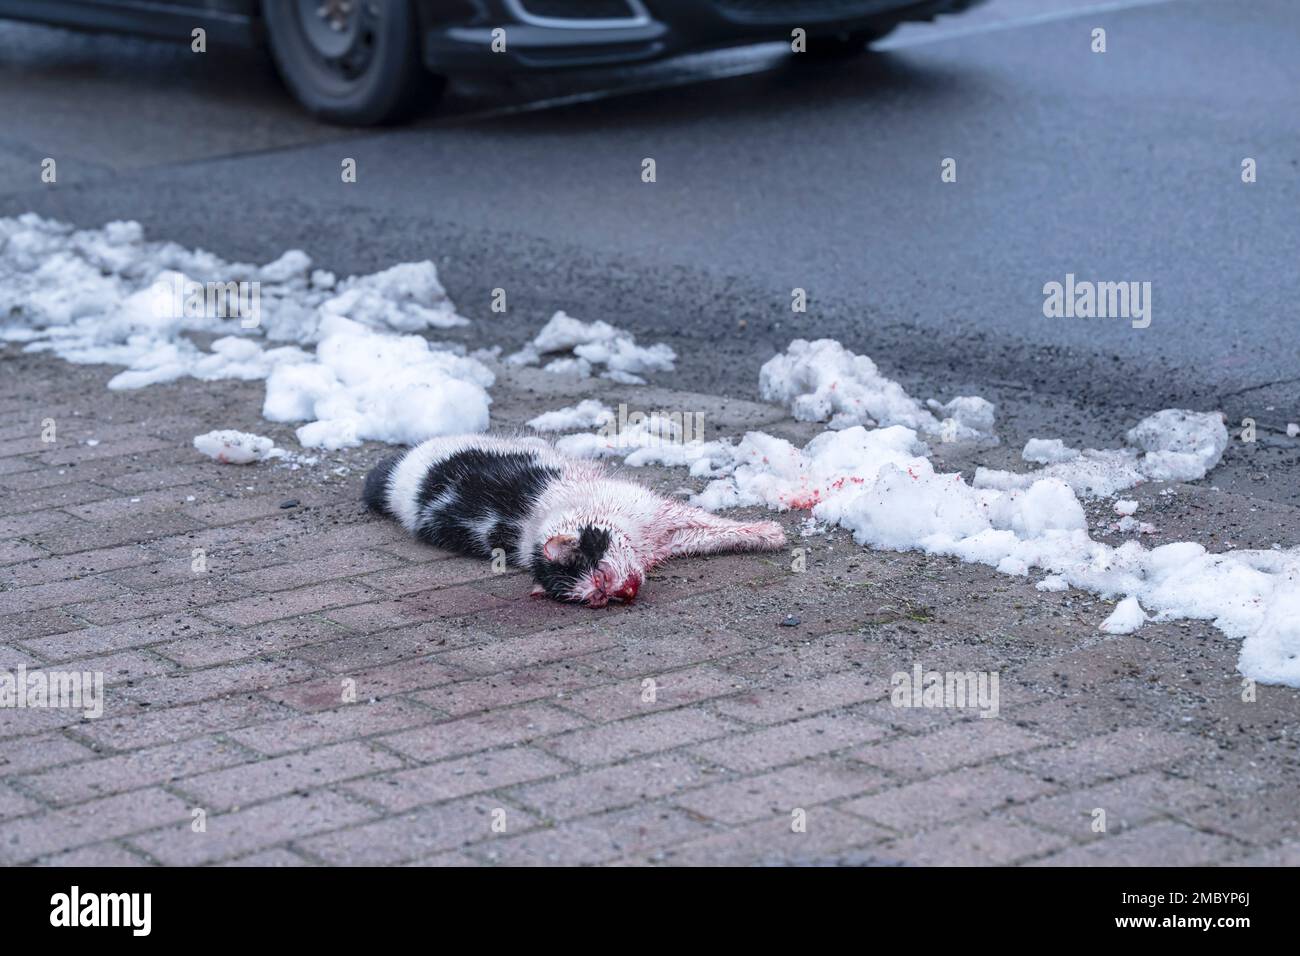 Eine Katze ist Opfer des Straßenverkehrs geworden Stockfoto